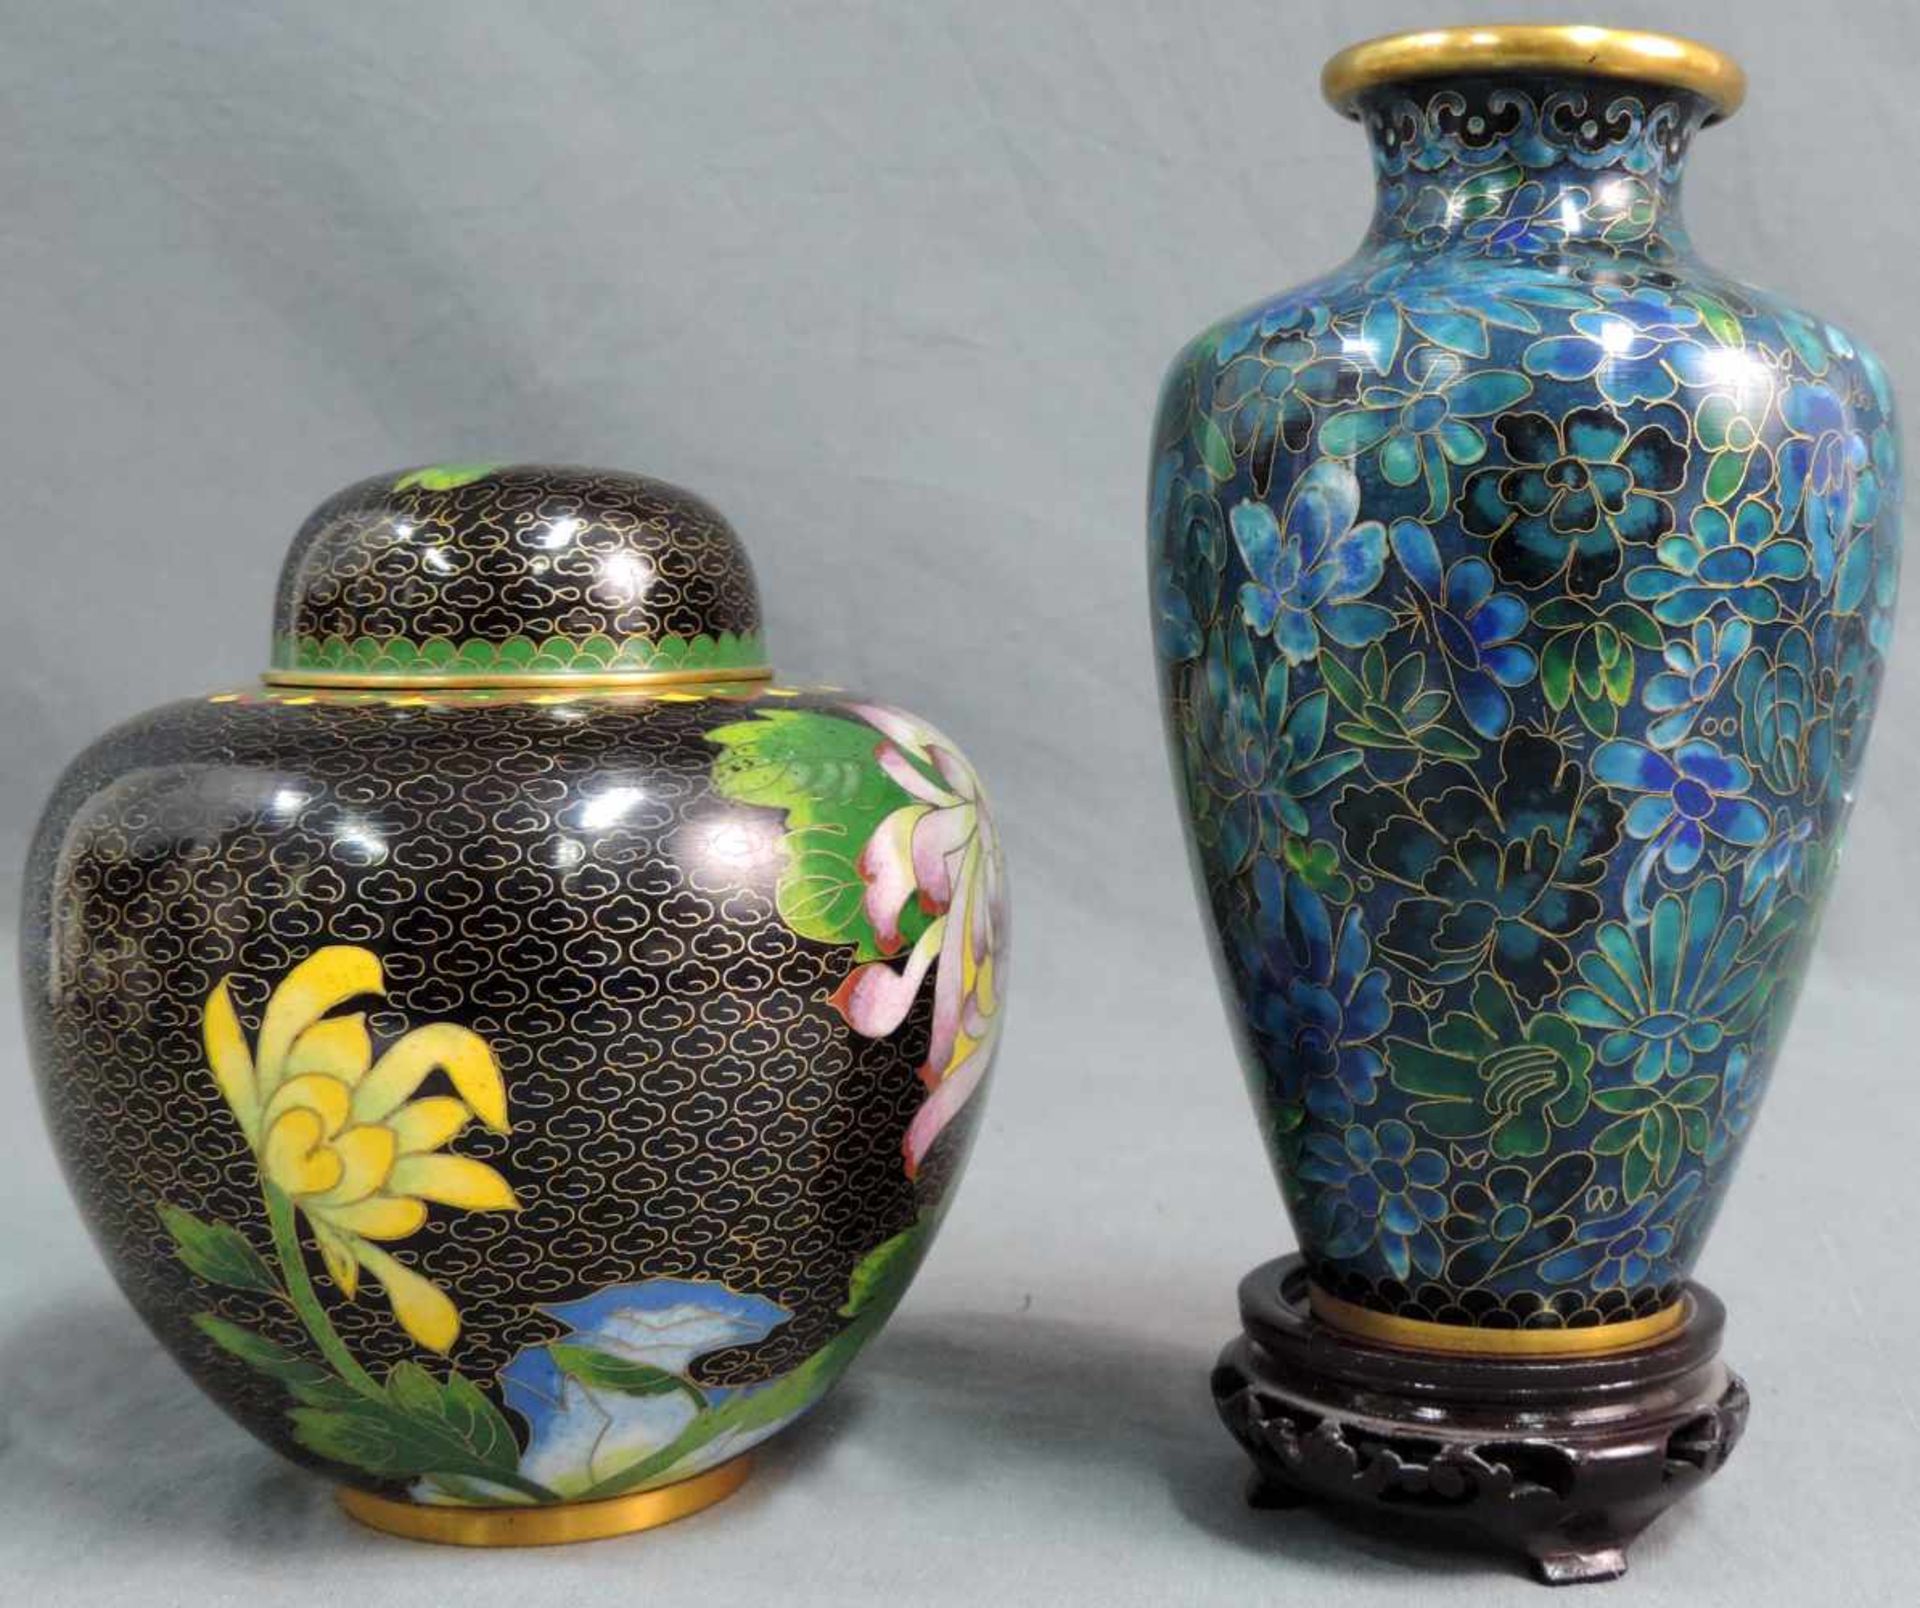 2 Cloisonne Vasen. Wohl China alt. Bis 18 cm hoch, ohne Holzsockel gemessen. 2 cloisonne vases. - Bild 3 aus 8